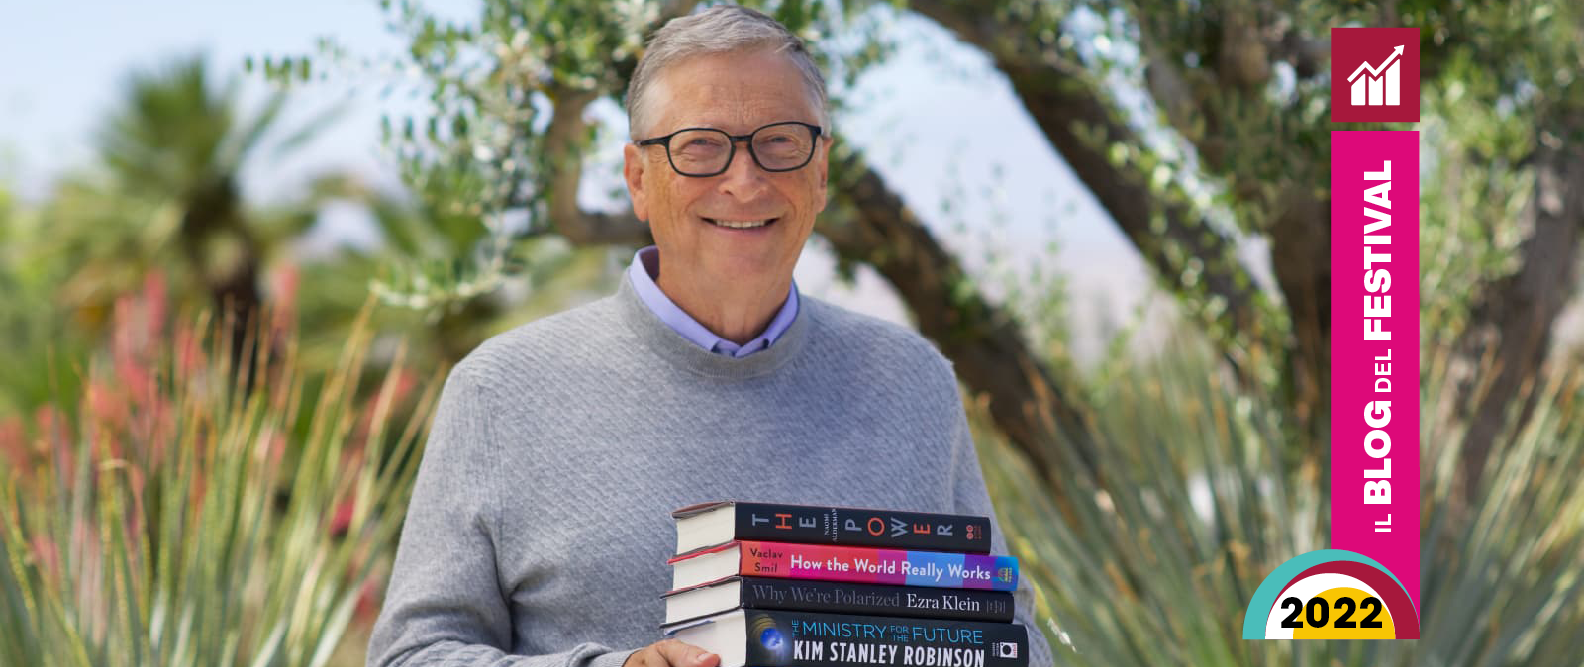 5 libri da leggere quest’estate consigliati da Bill Gates